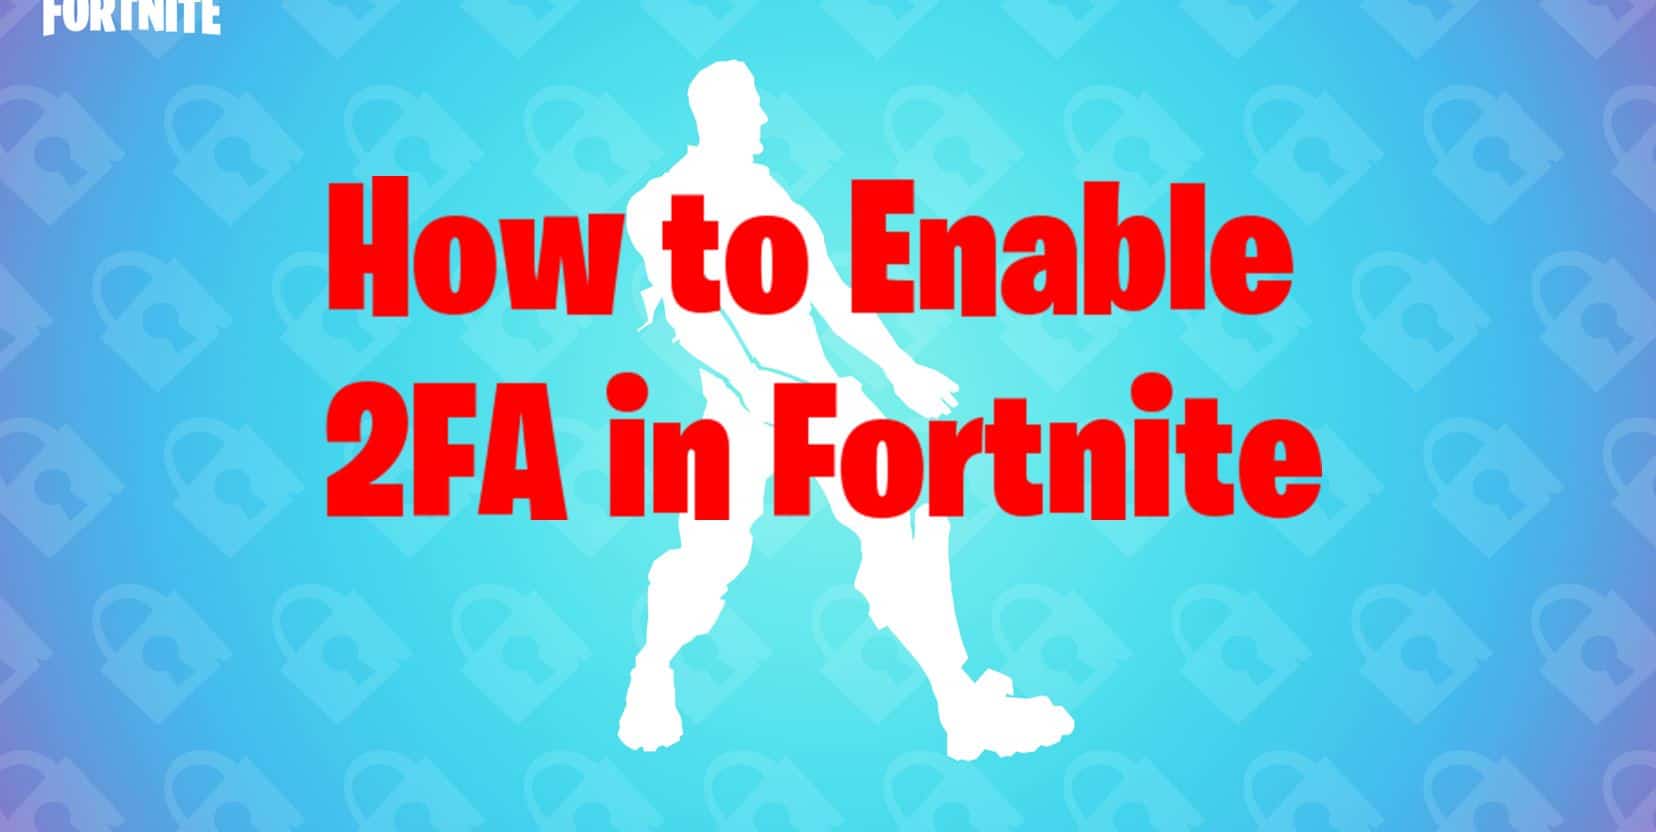 Verandert in baas september Fortnite 2FA Epic Games: How to enable 2FA in Fortnite - Fortnite Insider